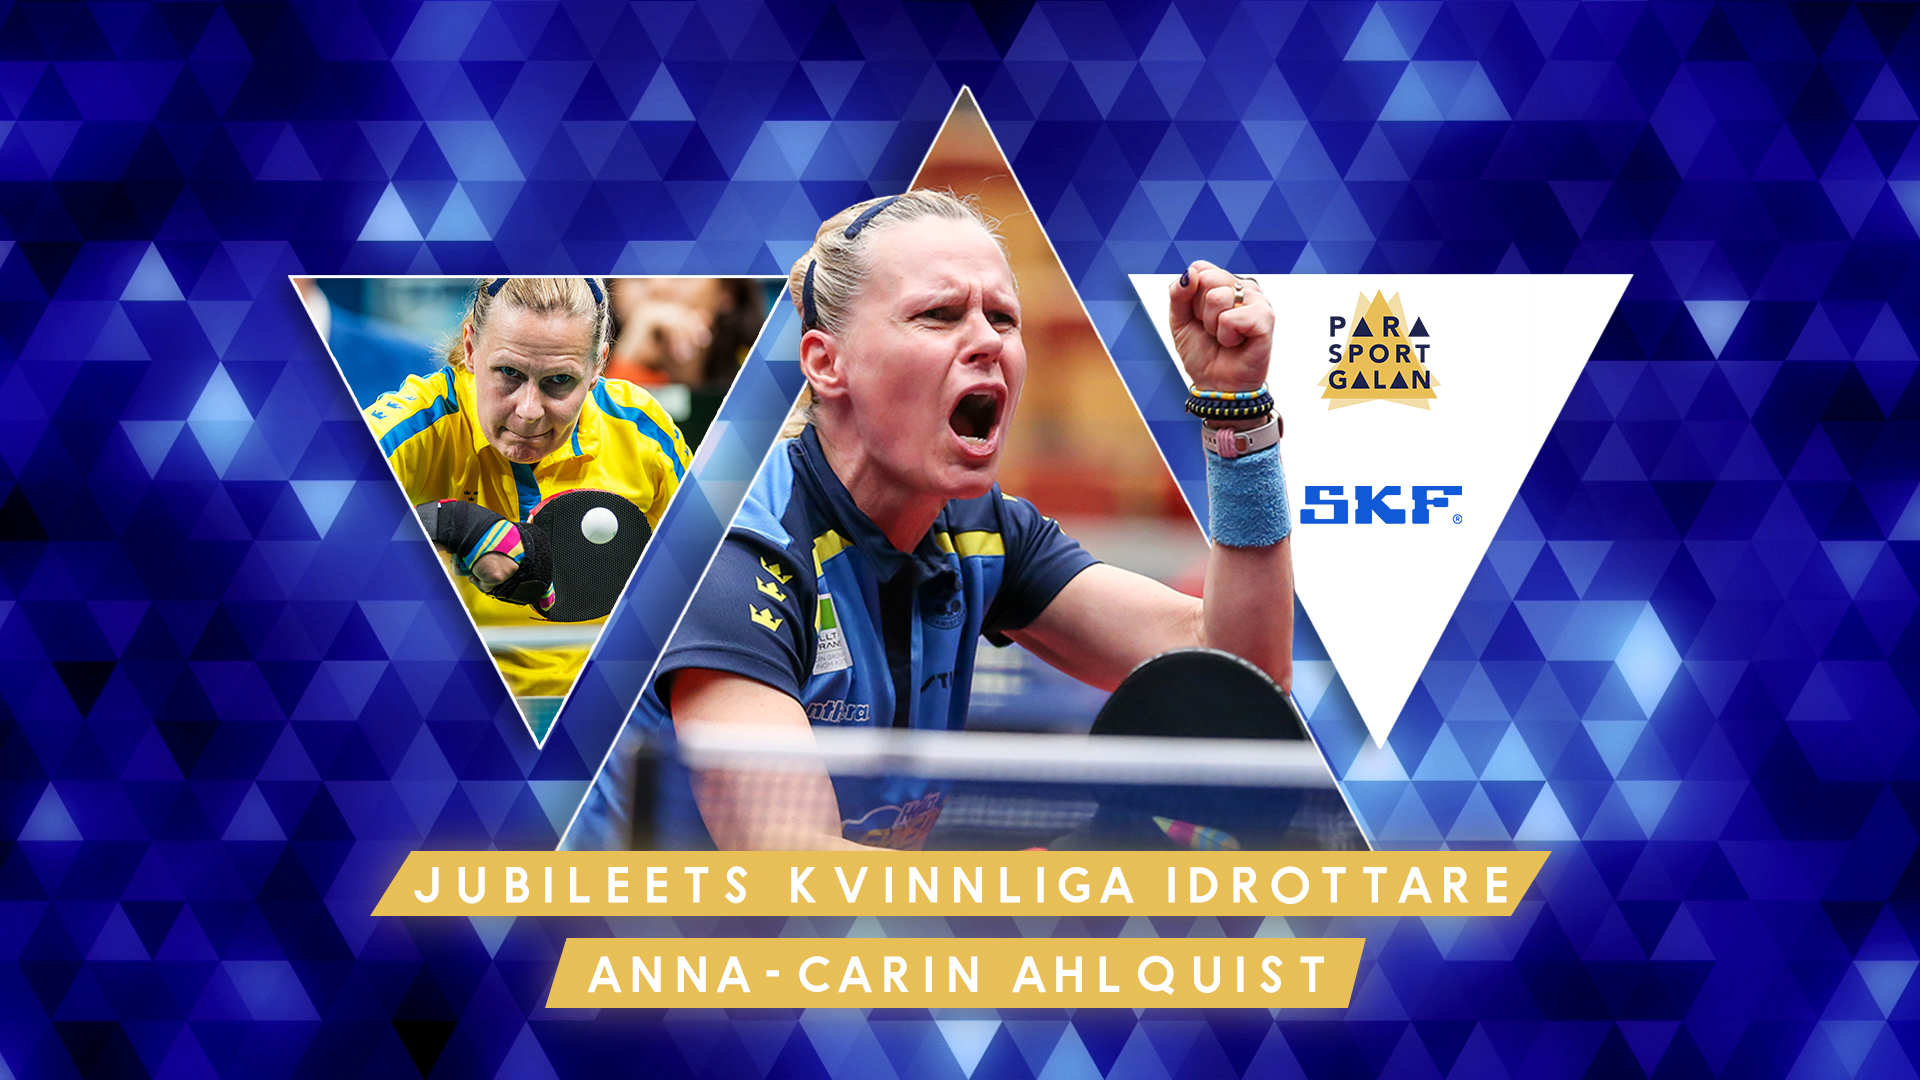 Anna-Carin Ahlquist - Jubileets kvinnliga idrottare